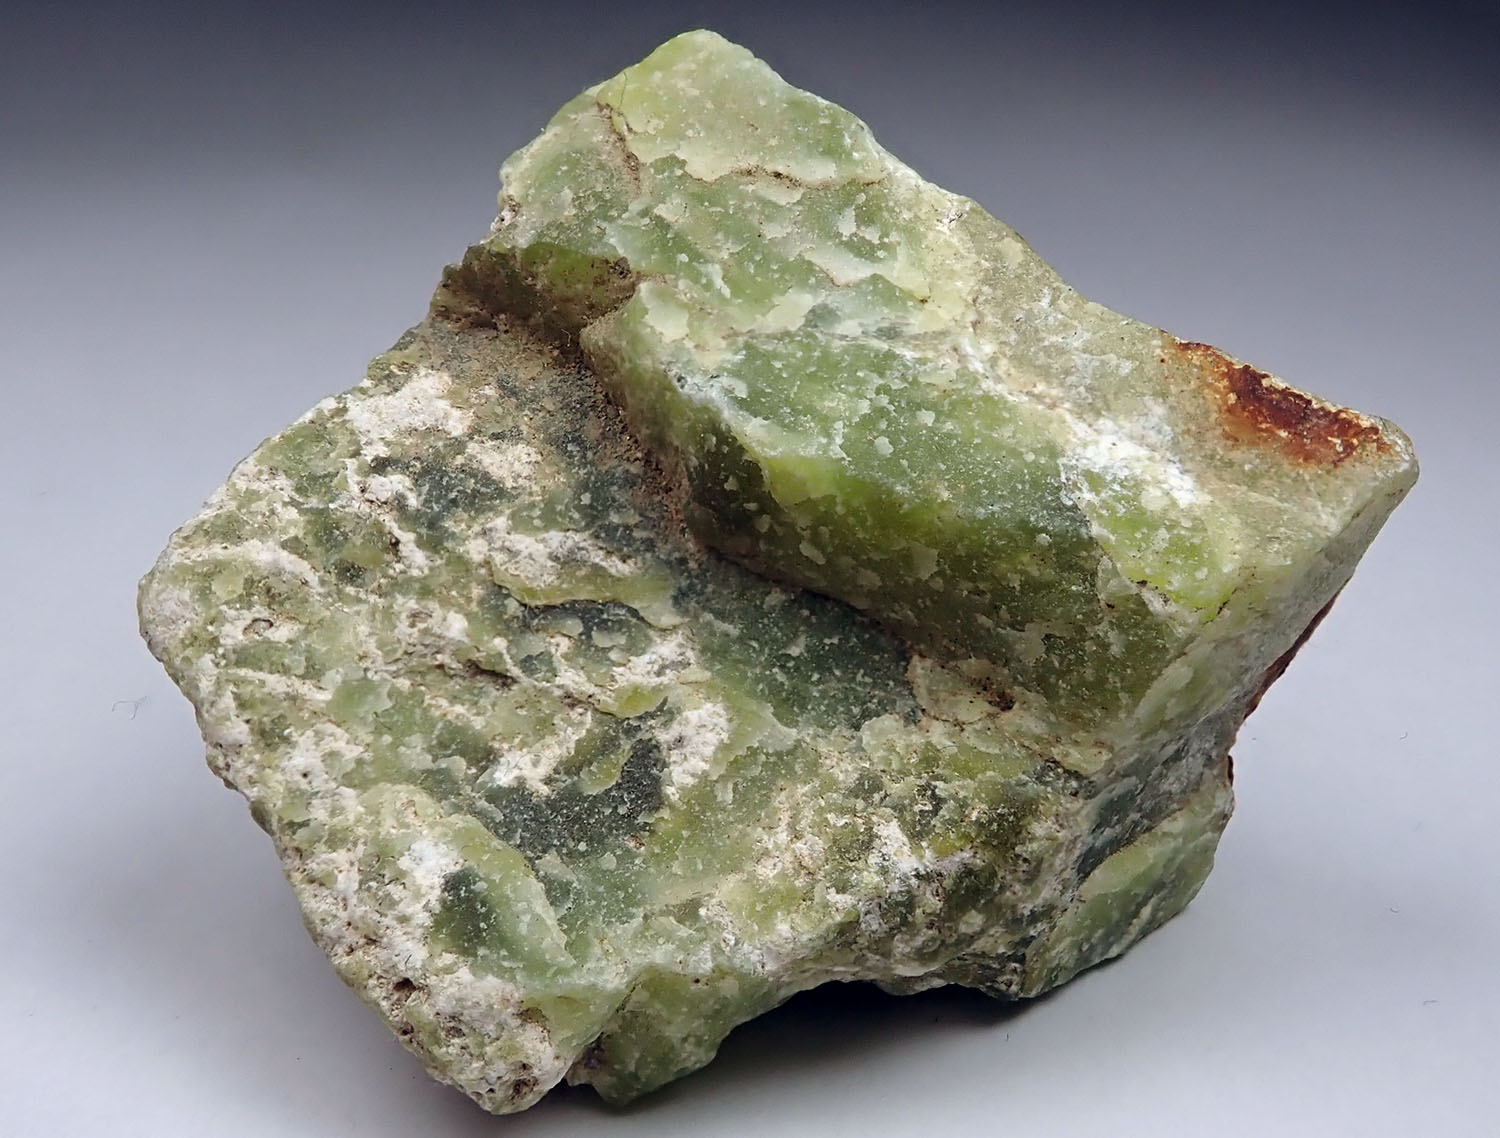 カリフォルニア玉に類するあざやかな黄緑色塊状のベスブ石 岩手県  Vivid yellow-green massive vesuvium, similar to California jade Japan